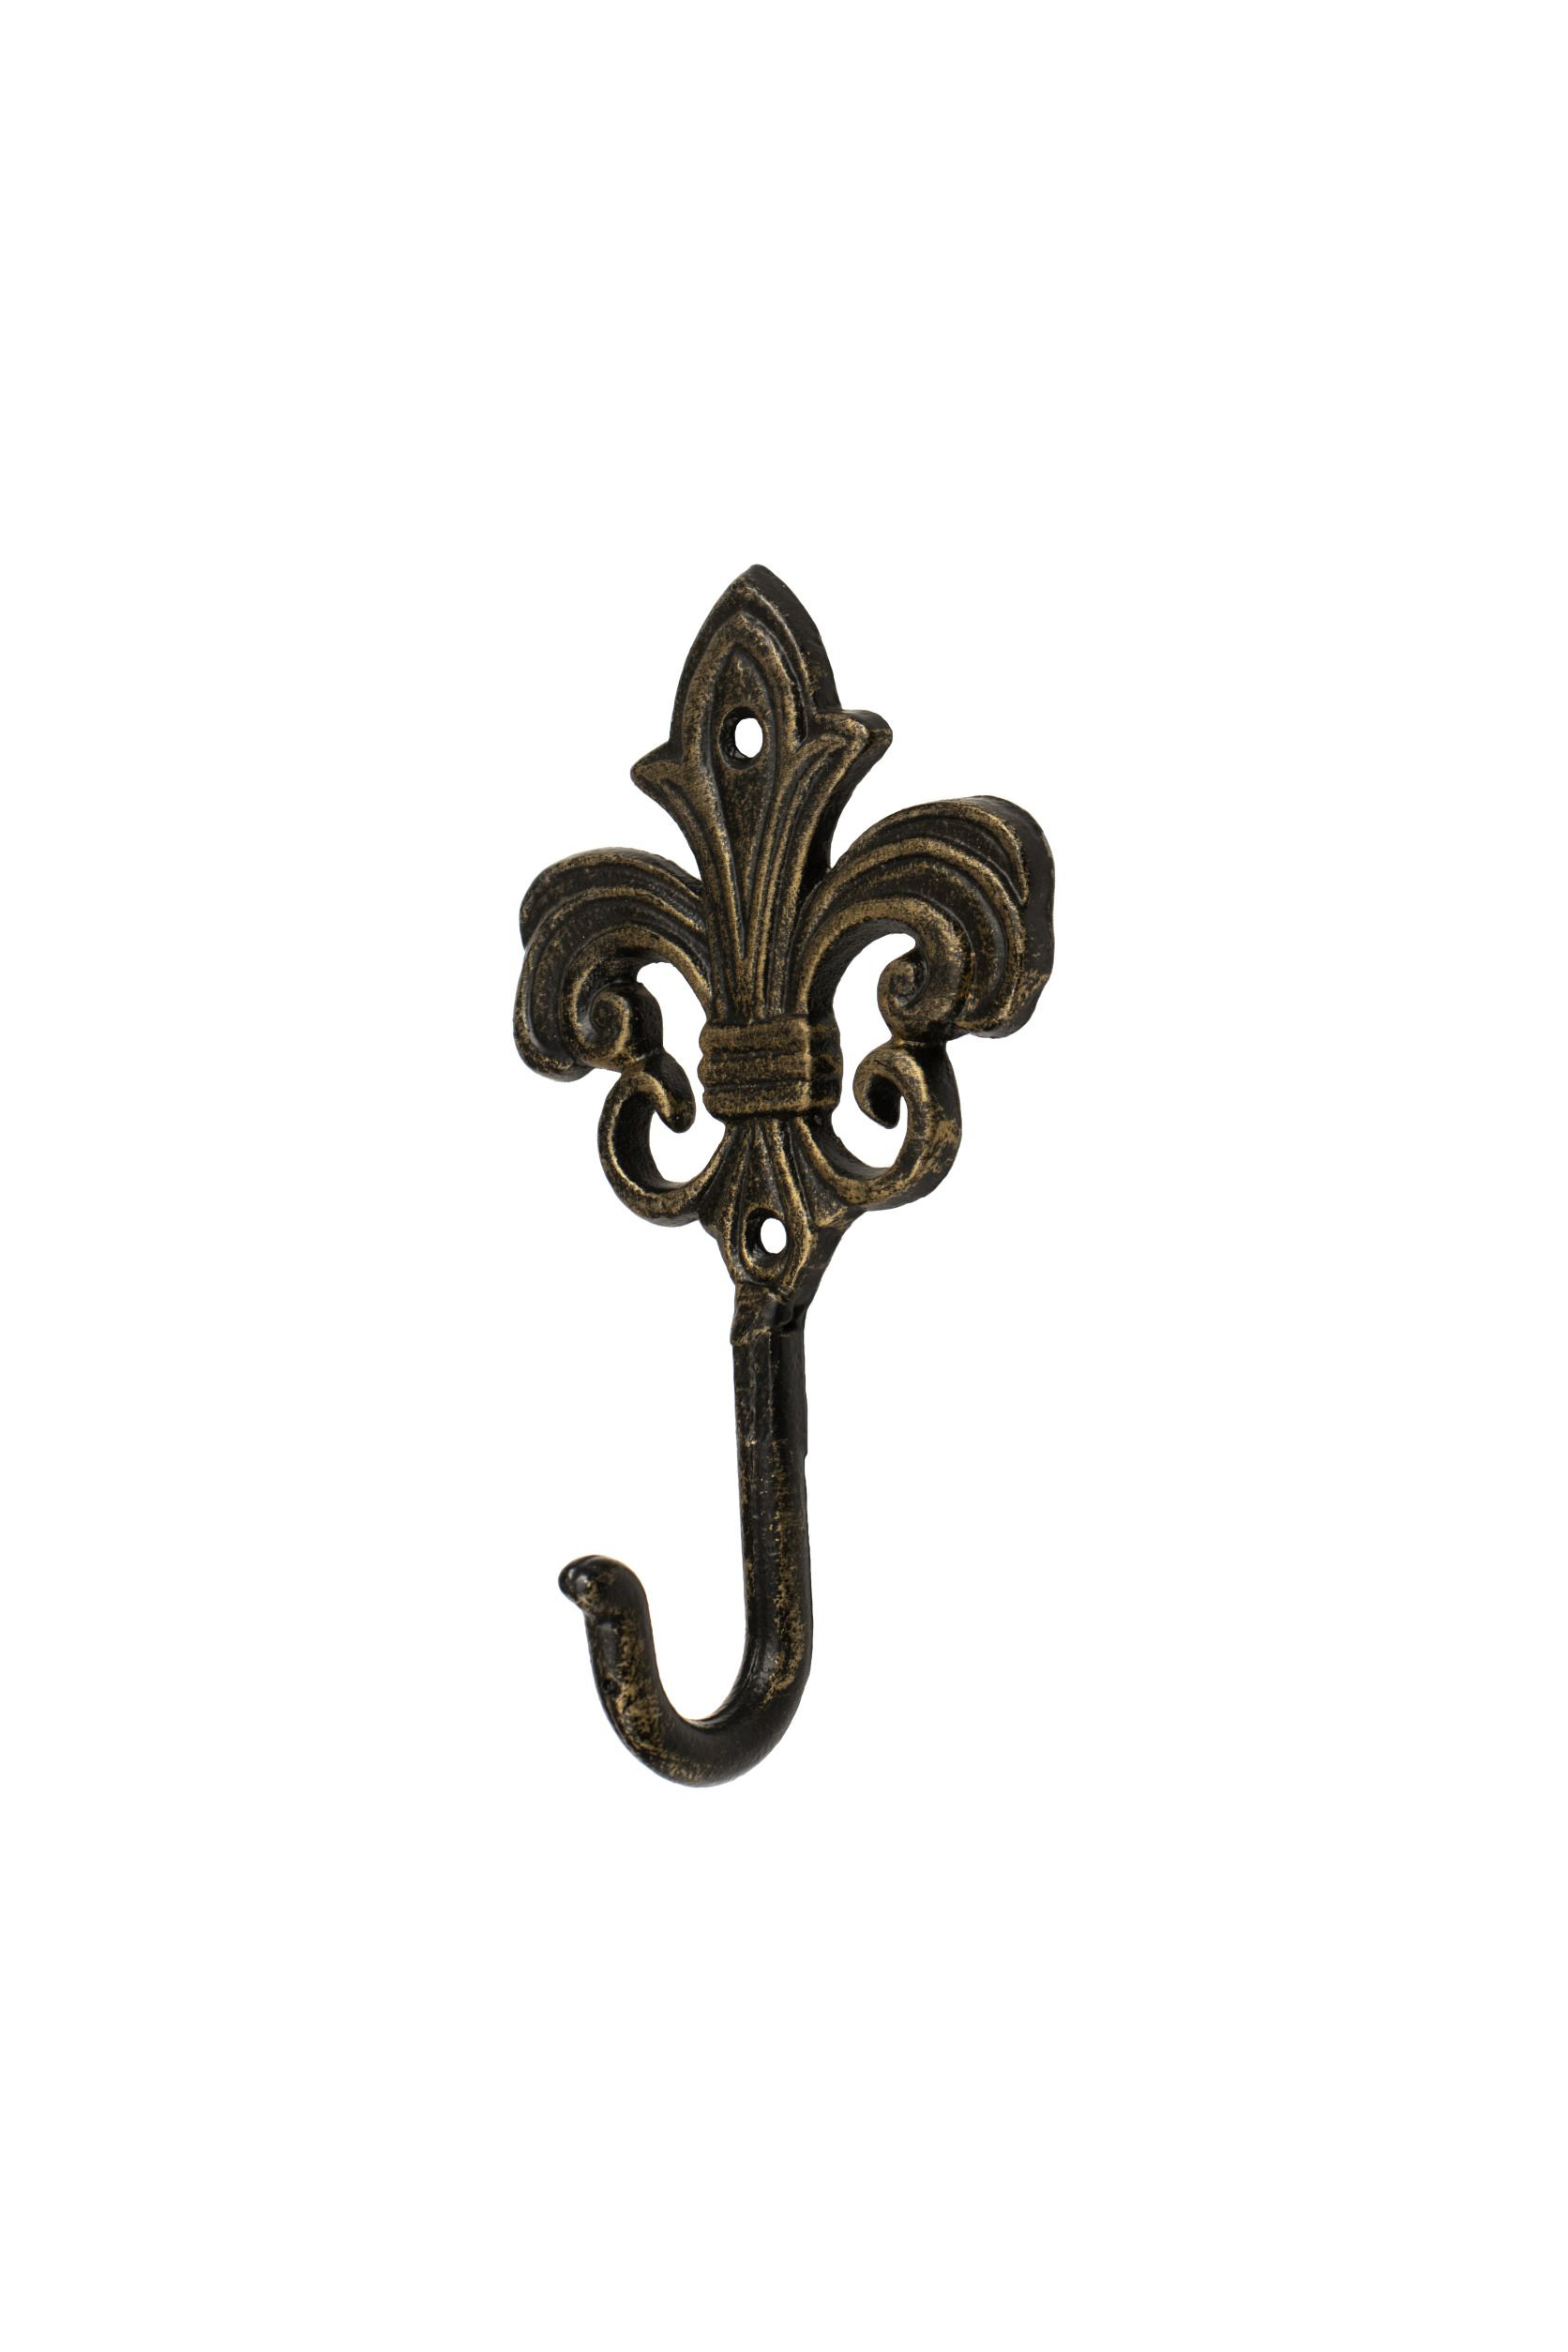 https://assets.wfcdn.com/im/79162164/compr-r85/2216/221604500/cast-iron-hook-fantashome-wall-mounted-cast-iron-home-decor-single-hook-spire.jpg